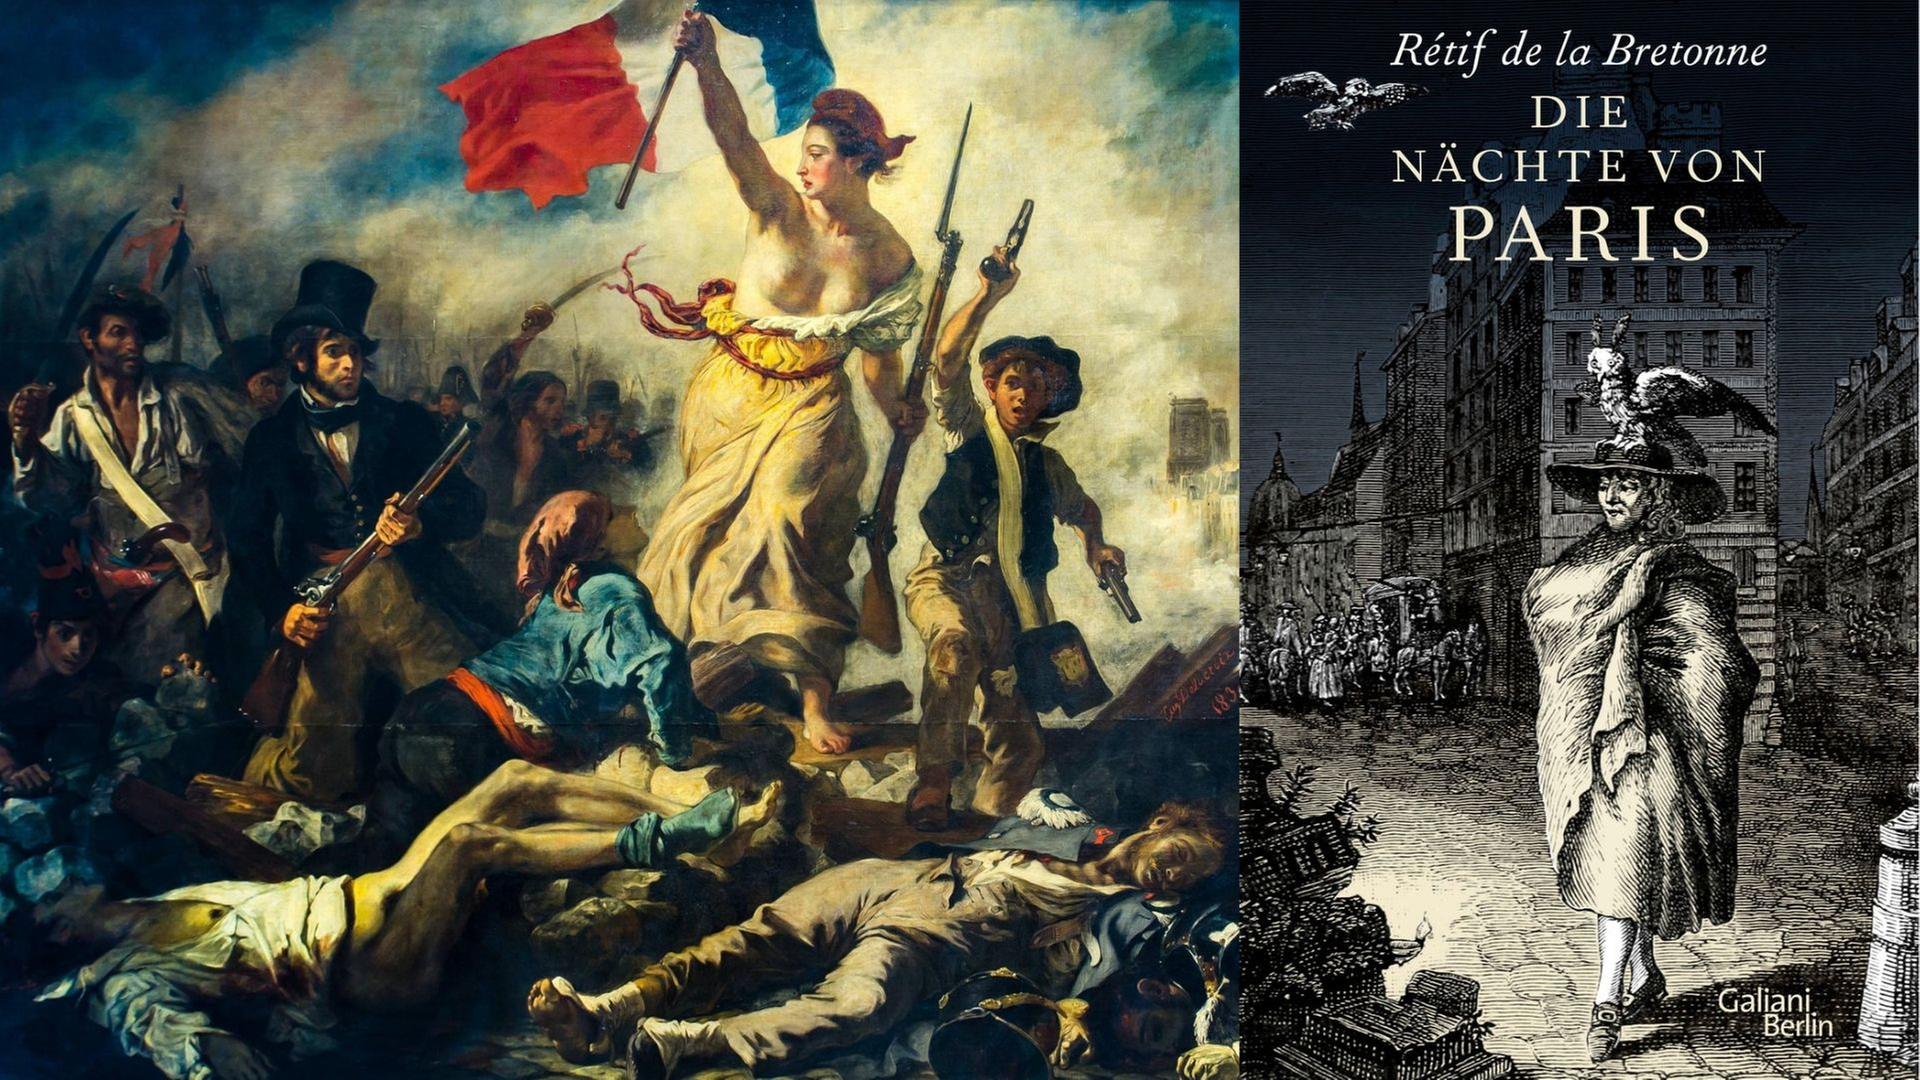 Buchcover: Rétif de la Bretonne: „Die Nächte von Paris“ und Ausschnitt aus dem Gemälde "Die Freiheit führt das Volk" von Eugene Delacroix